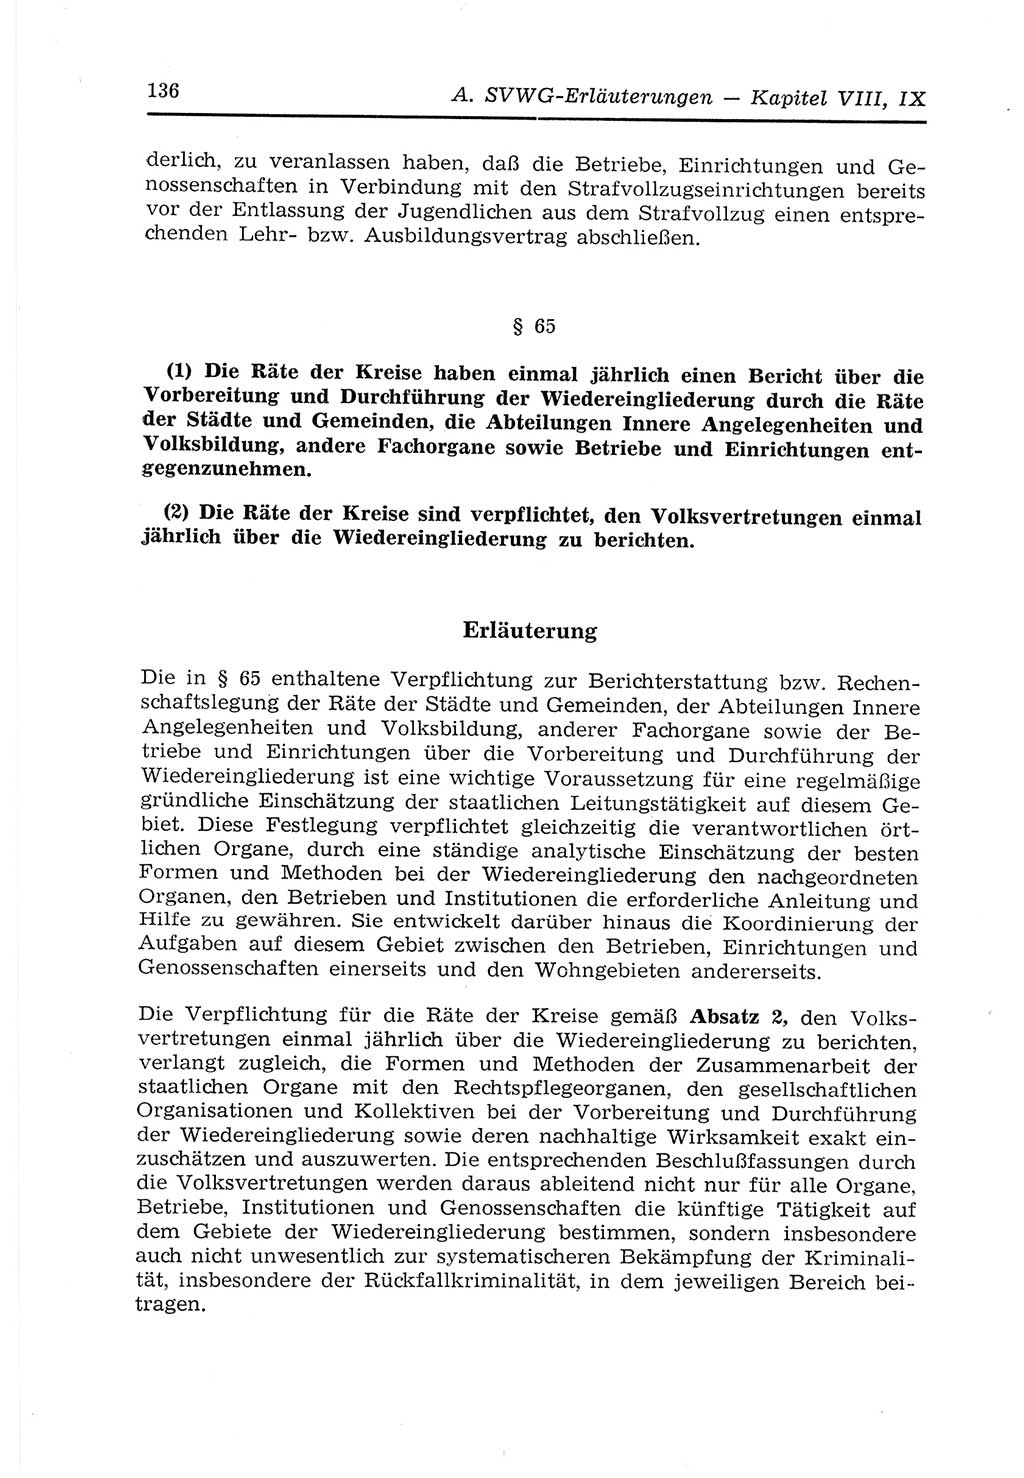 Strafvollzugs- und Wiedereingliederungsgesetz (SVWG) der Deutschen Demokratischen Republik (DDR) 1968, Seite 136 (SVWG DDR 1968, S. 136)